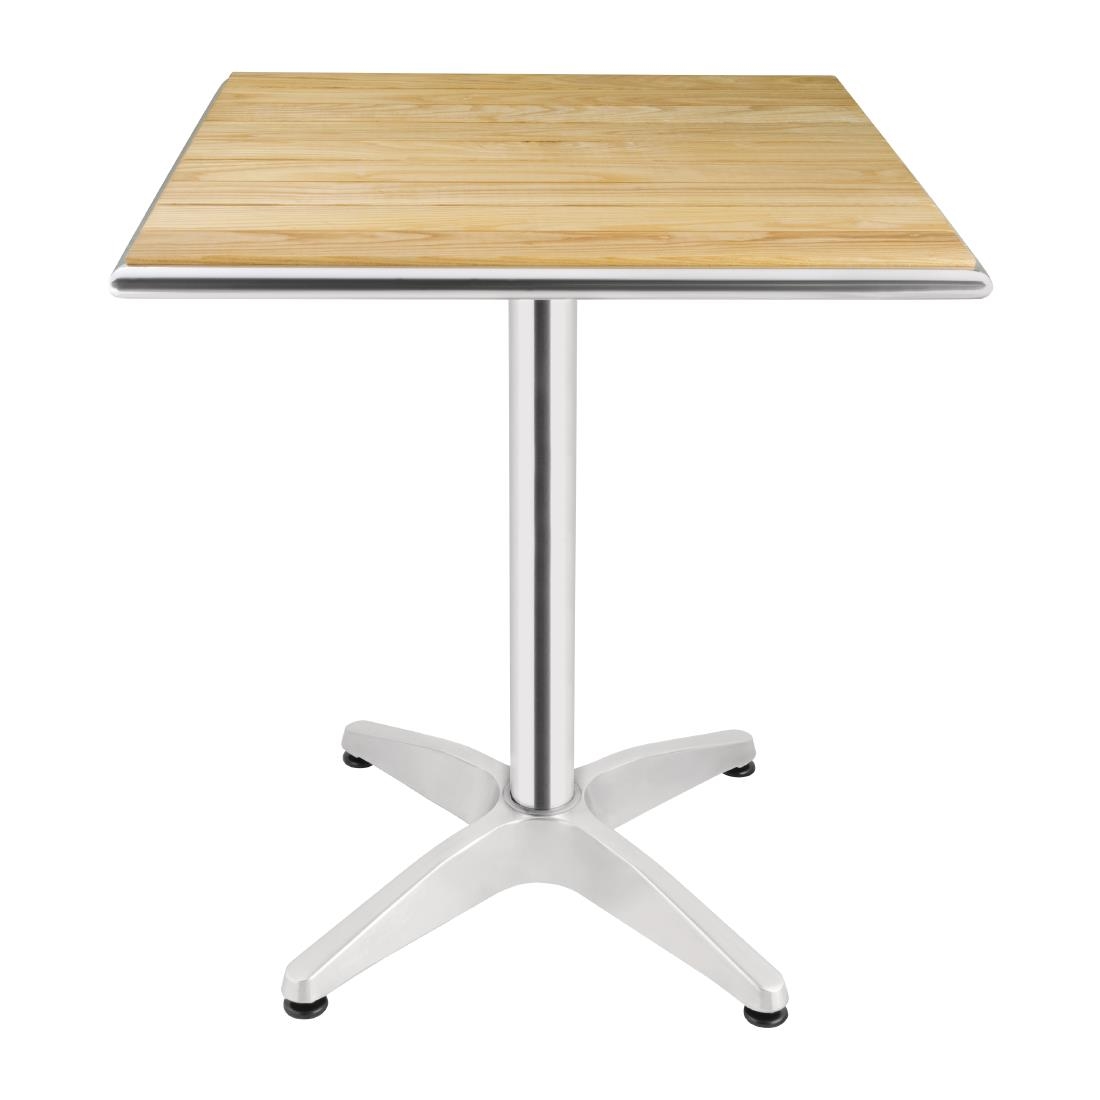 Bolero quadratischer Tisch Eschenholz 1 Bein 60cm